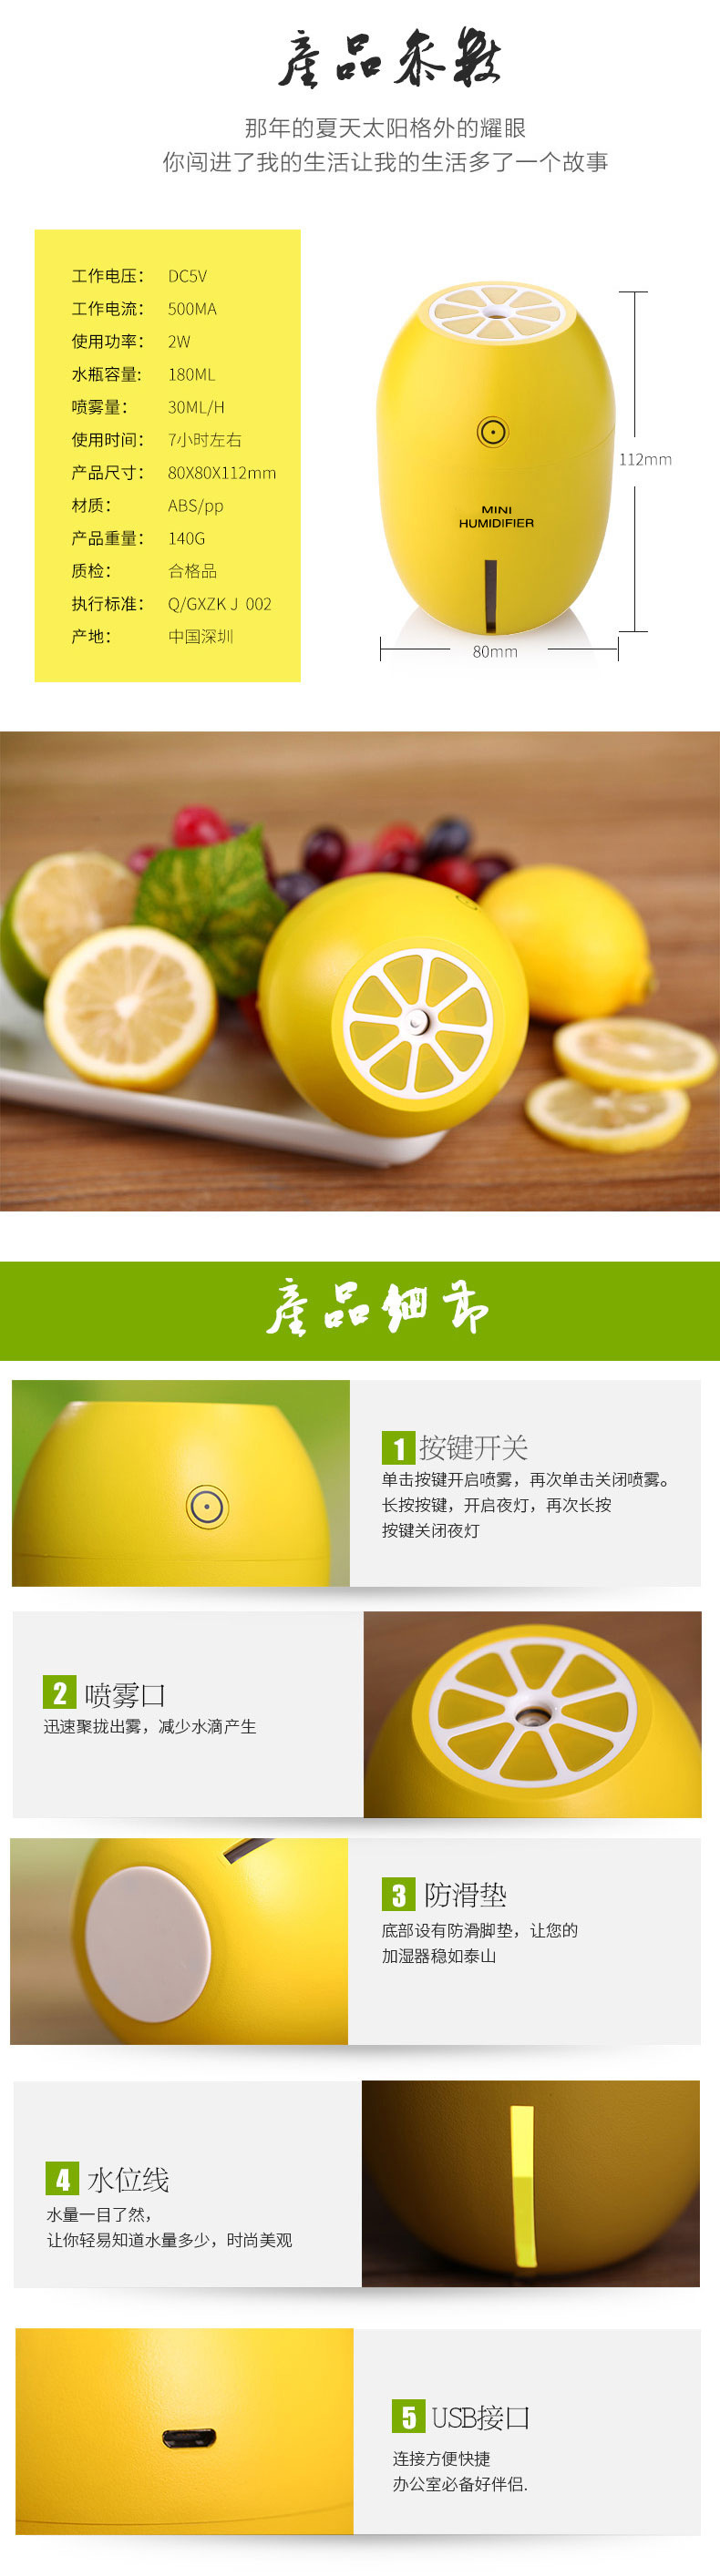 柠檬加湿器描述-4_07